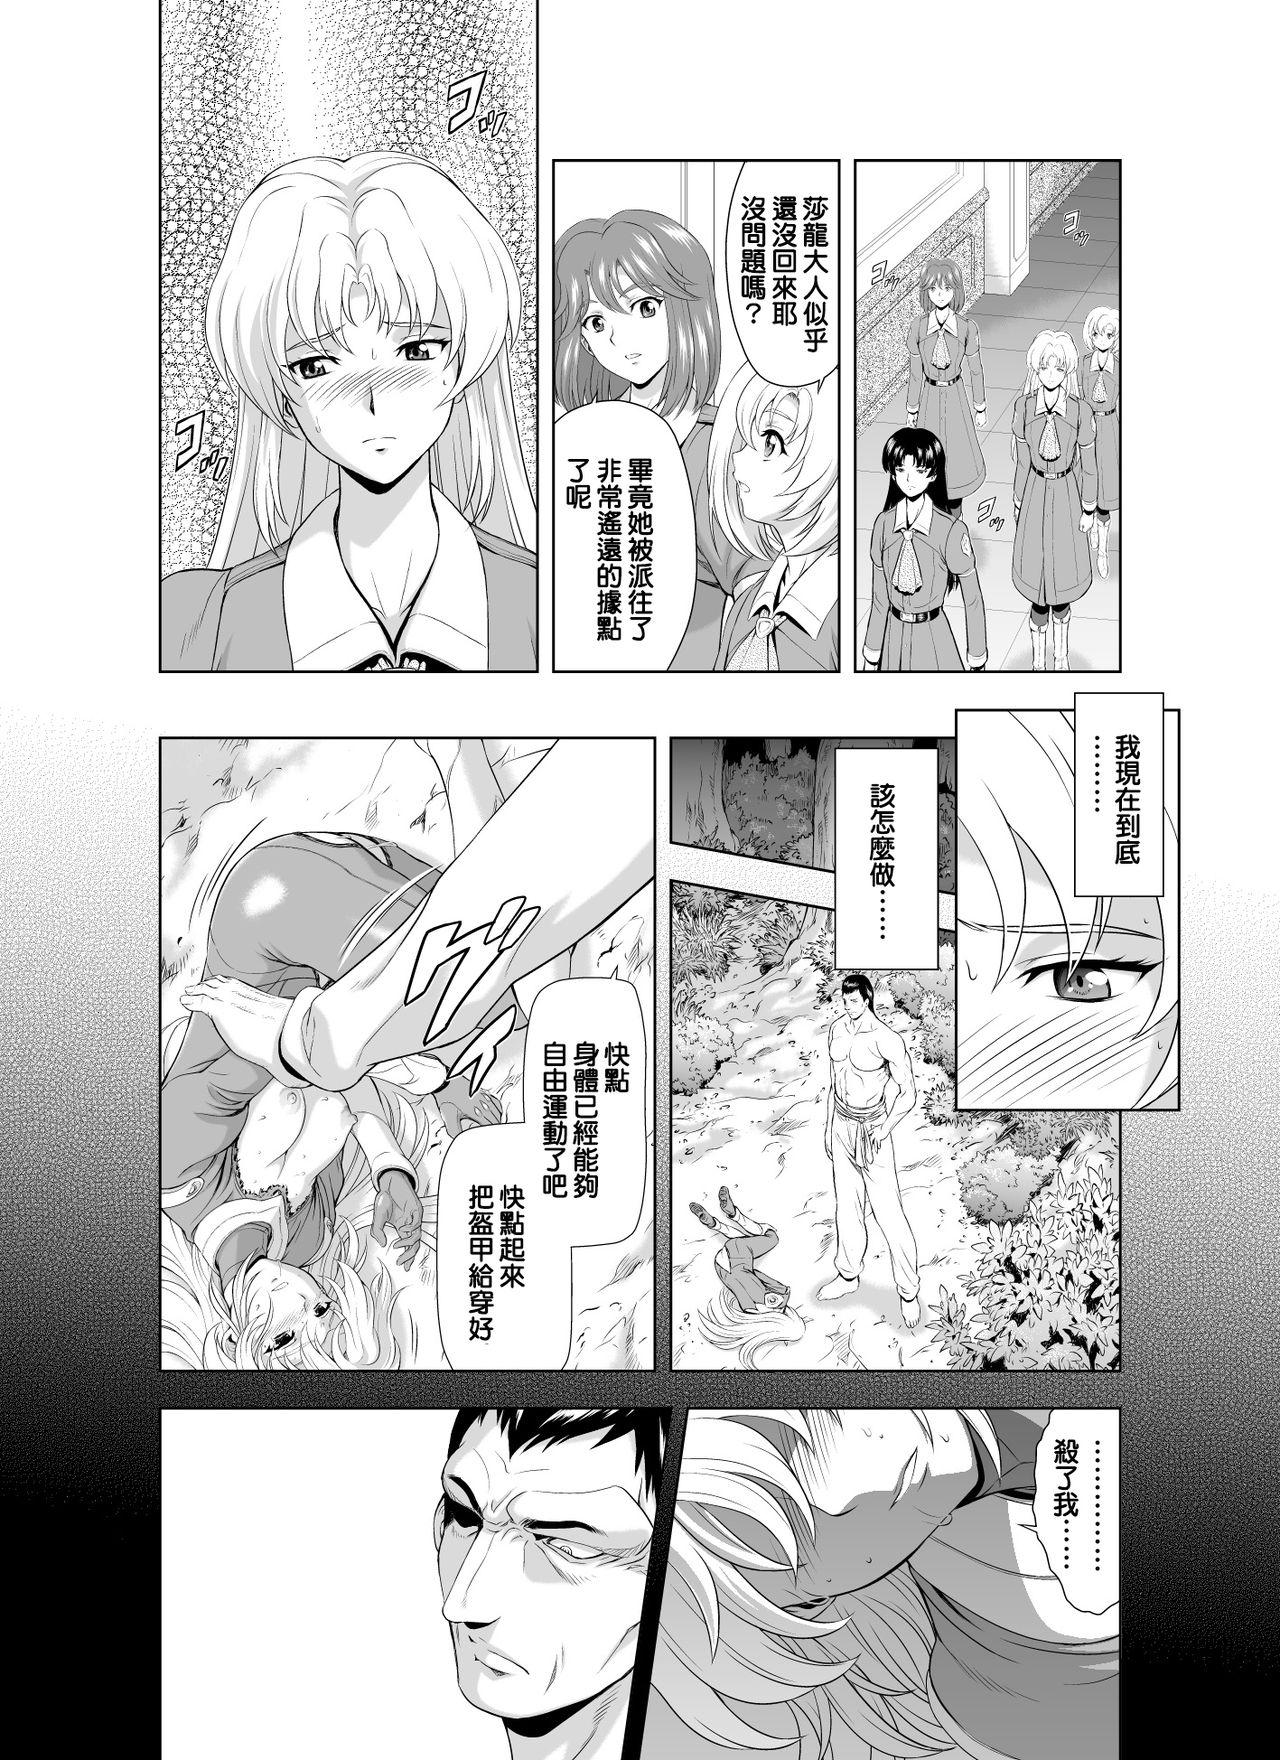 Reties no Michibiki Vol. 2 | 蕾蒂絲的引導 Vol. 2 6